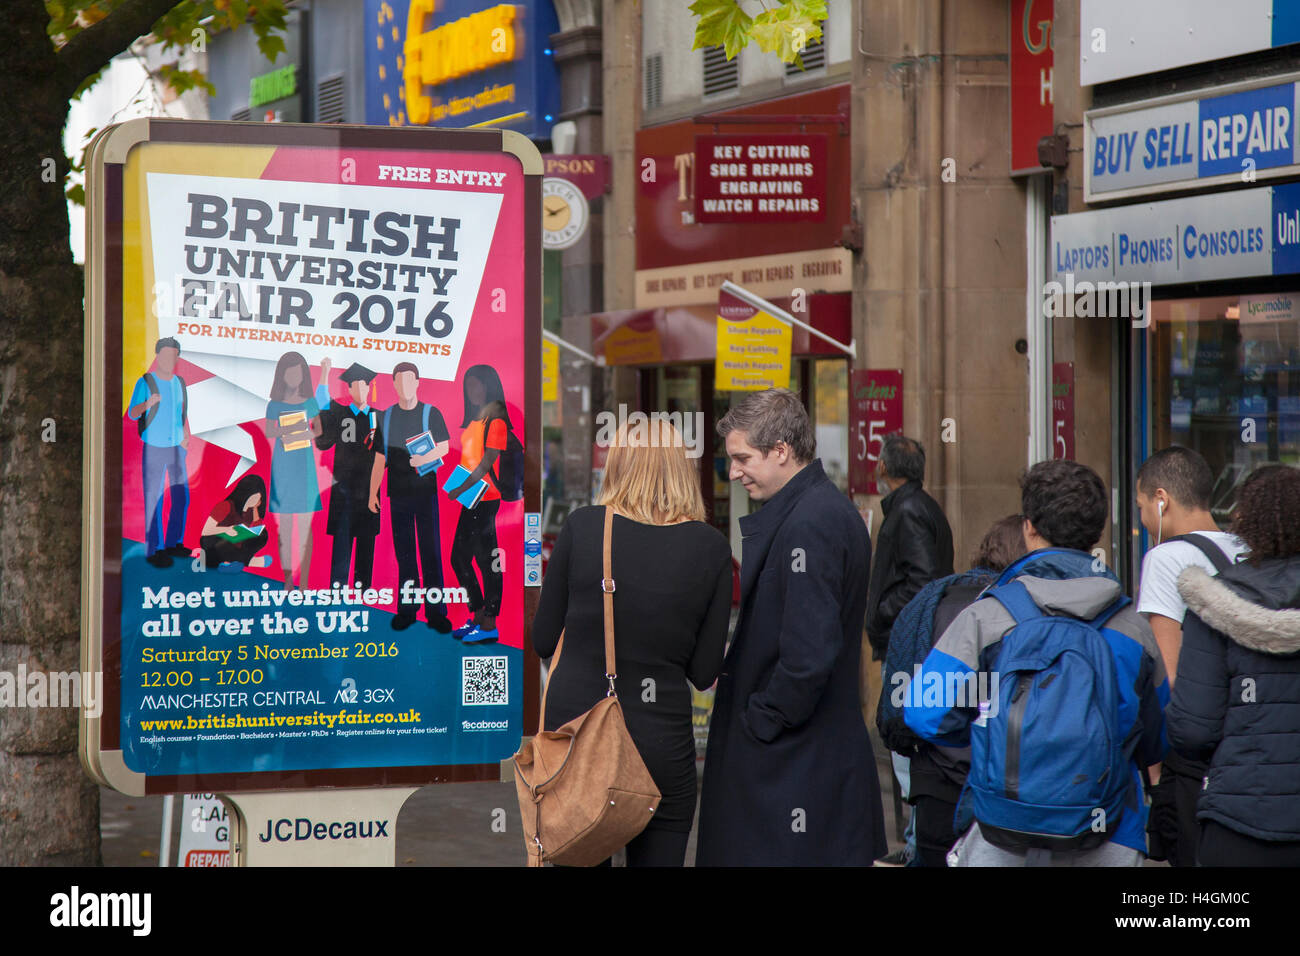 JCDecaux street pubblicità per università britannica Fair 2016, Manchester, Regno Unito Foto Stock